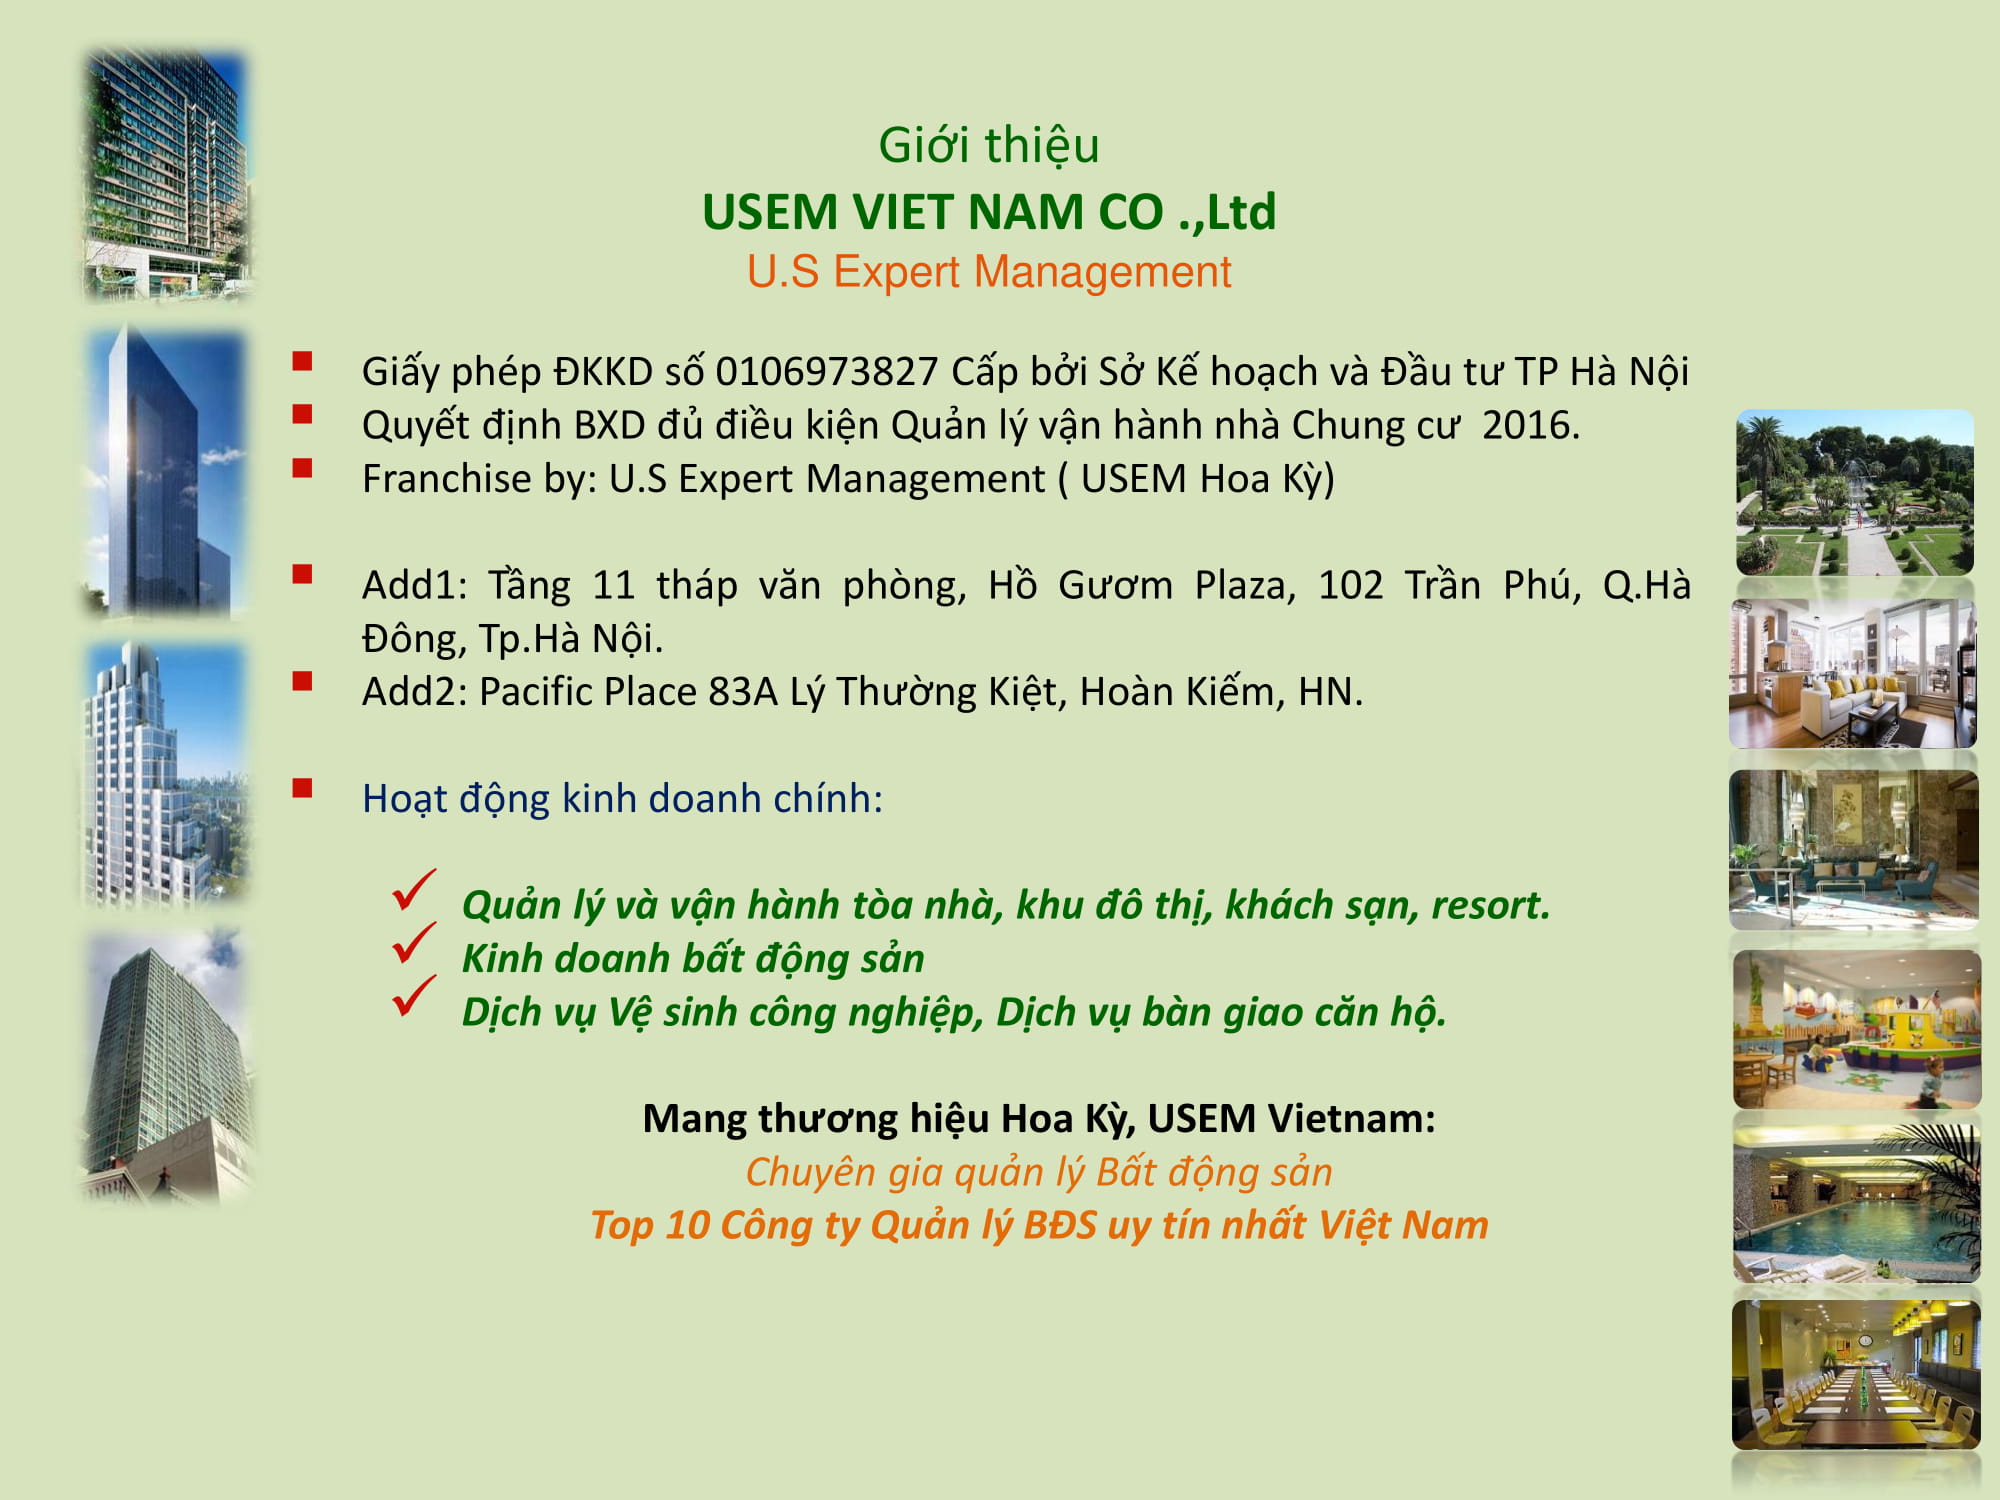 Profile USEM 11.2019-03